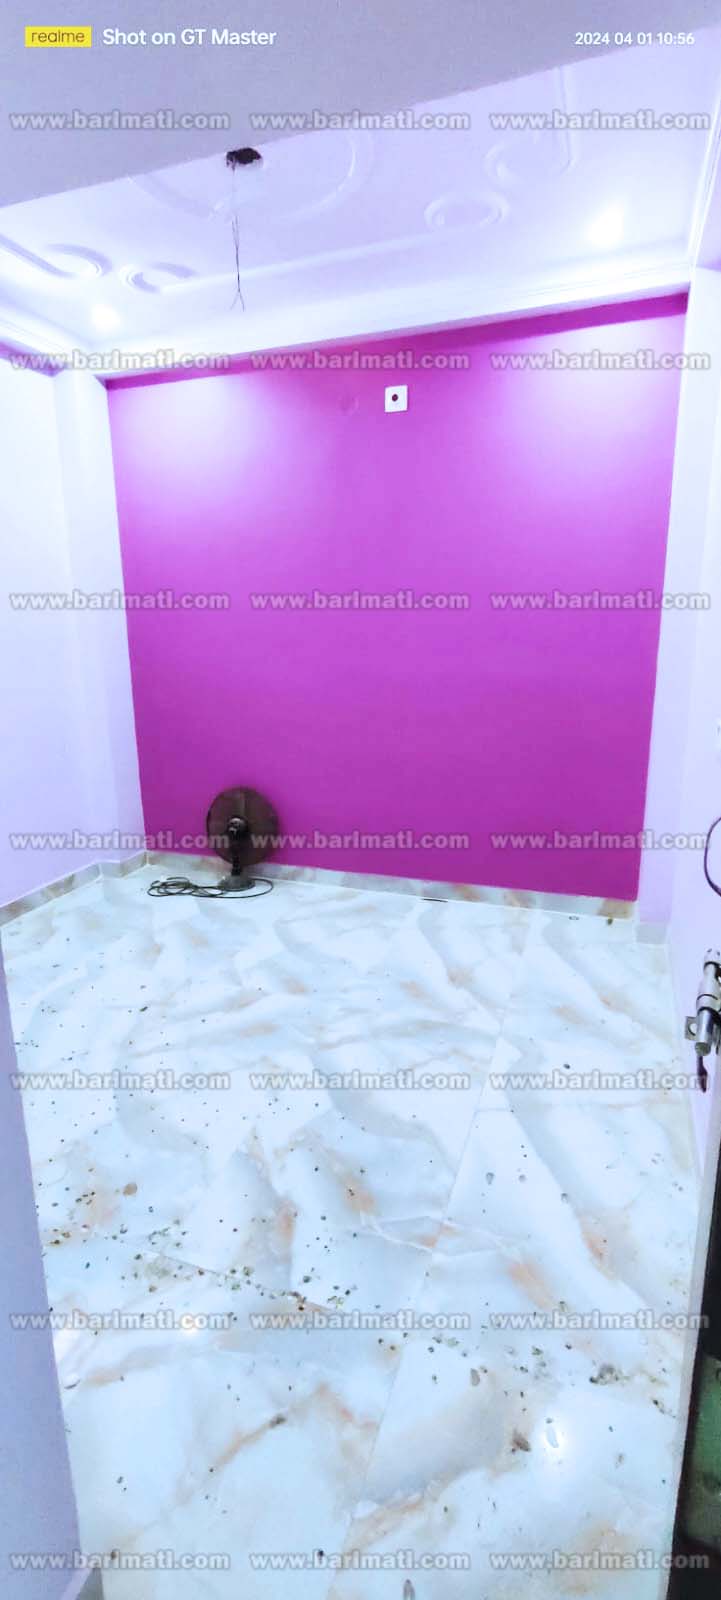 2 bedroom flat rent at Anisabad, Harnichak in Patna Bihar under 7000 per month rent